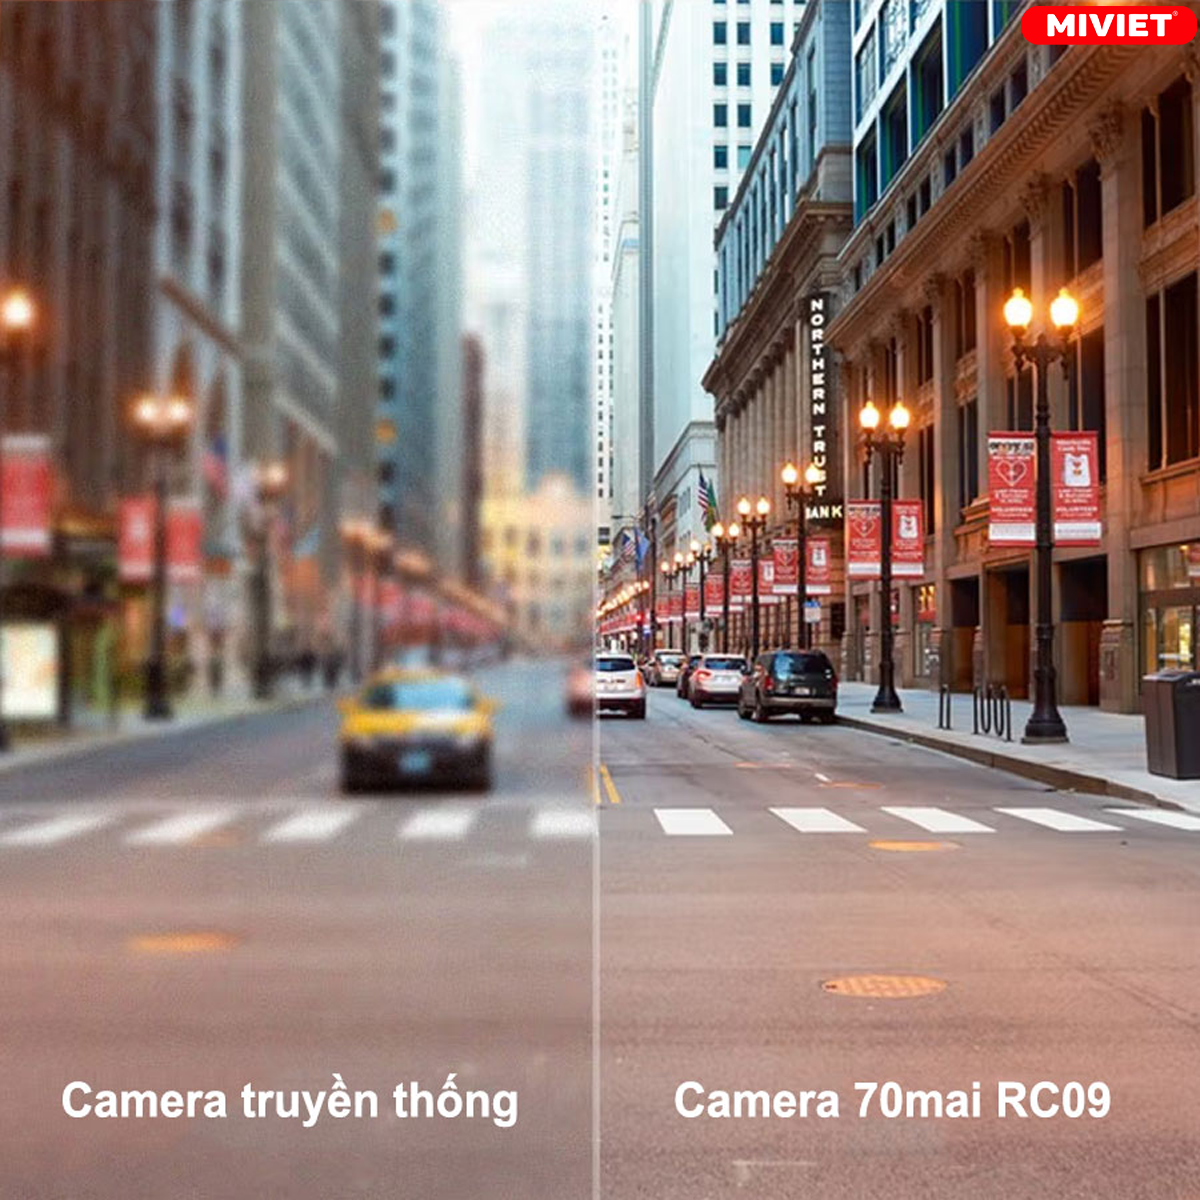 Sự khác biệt giữa camera thường và 70mai Rc09